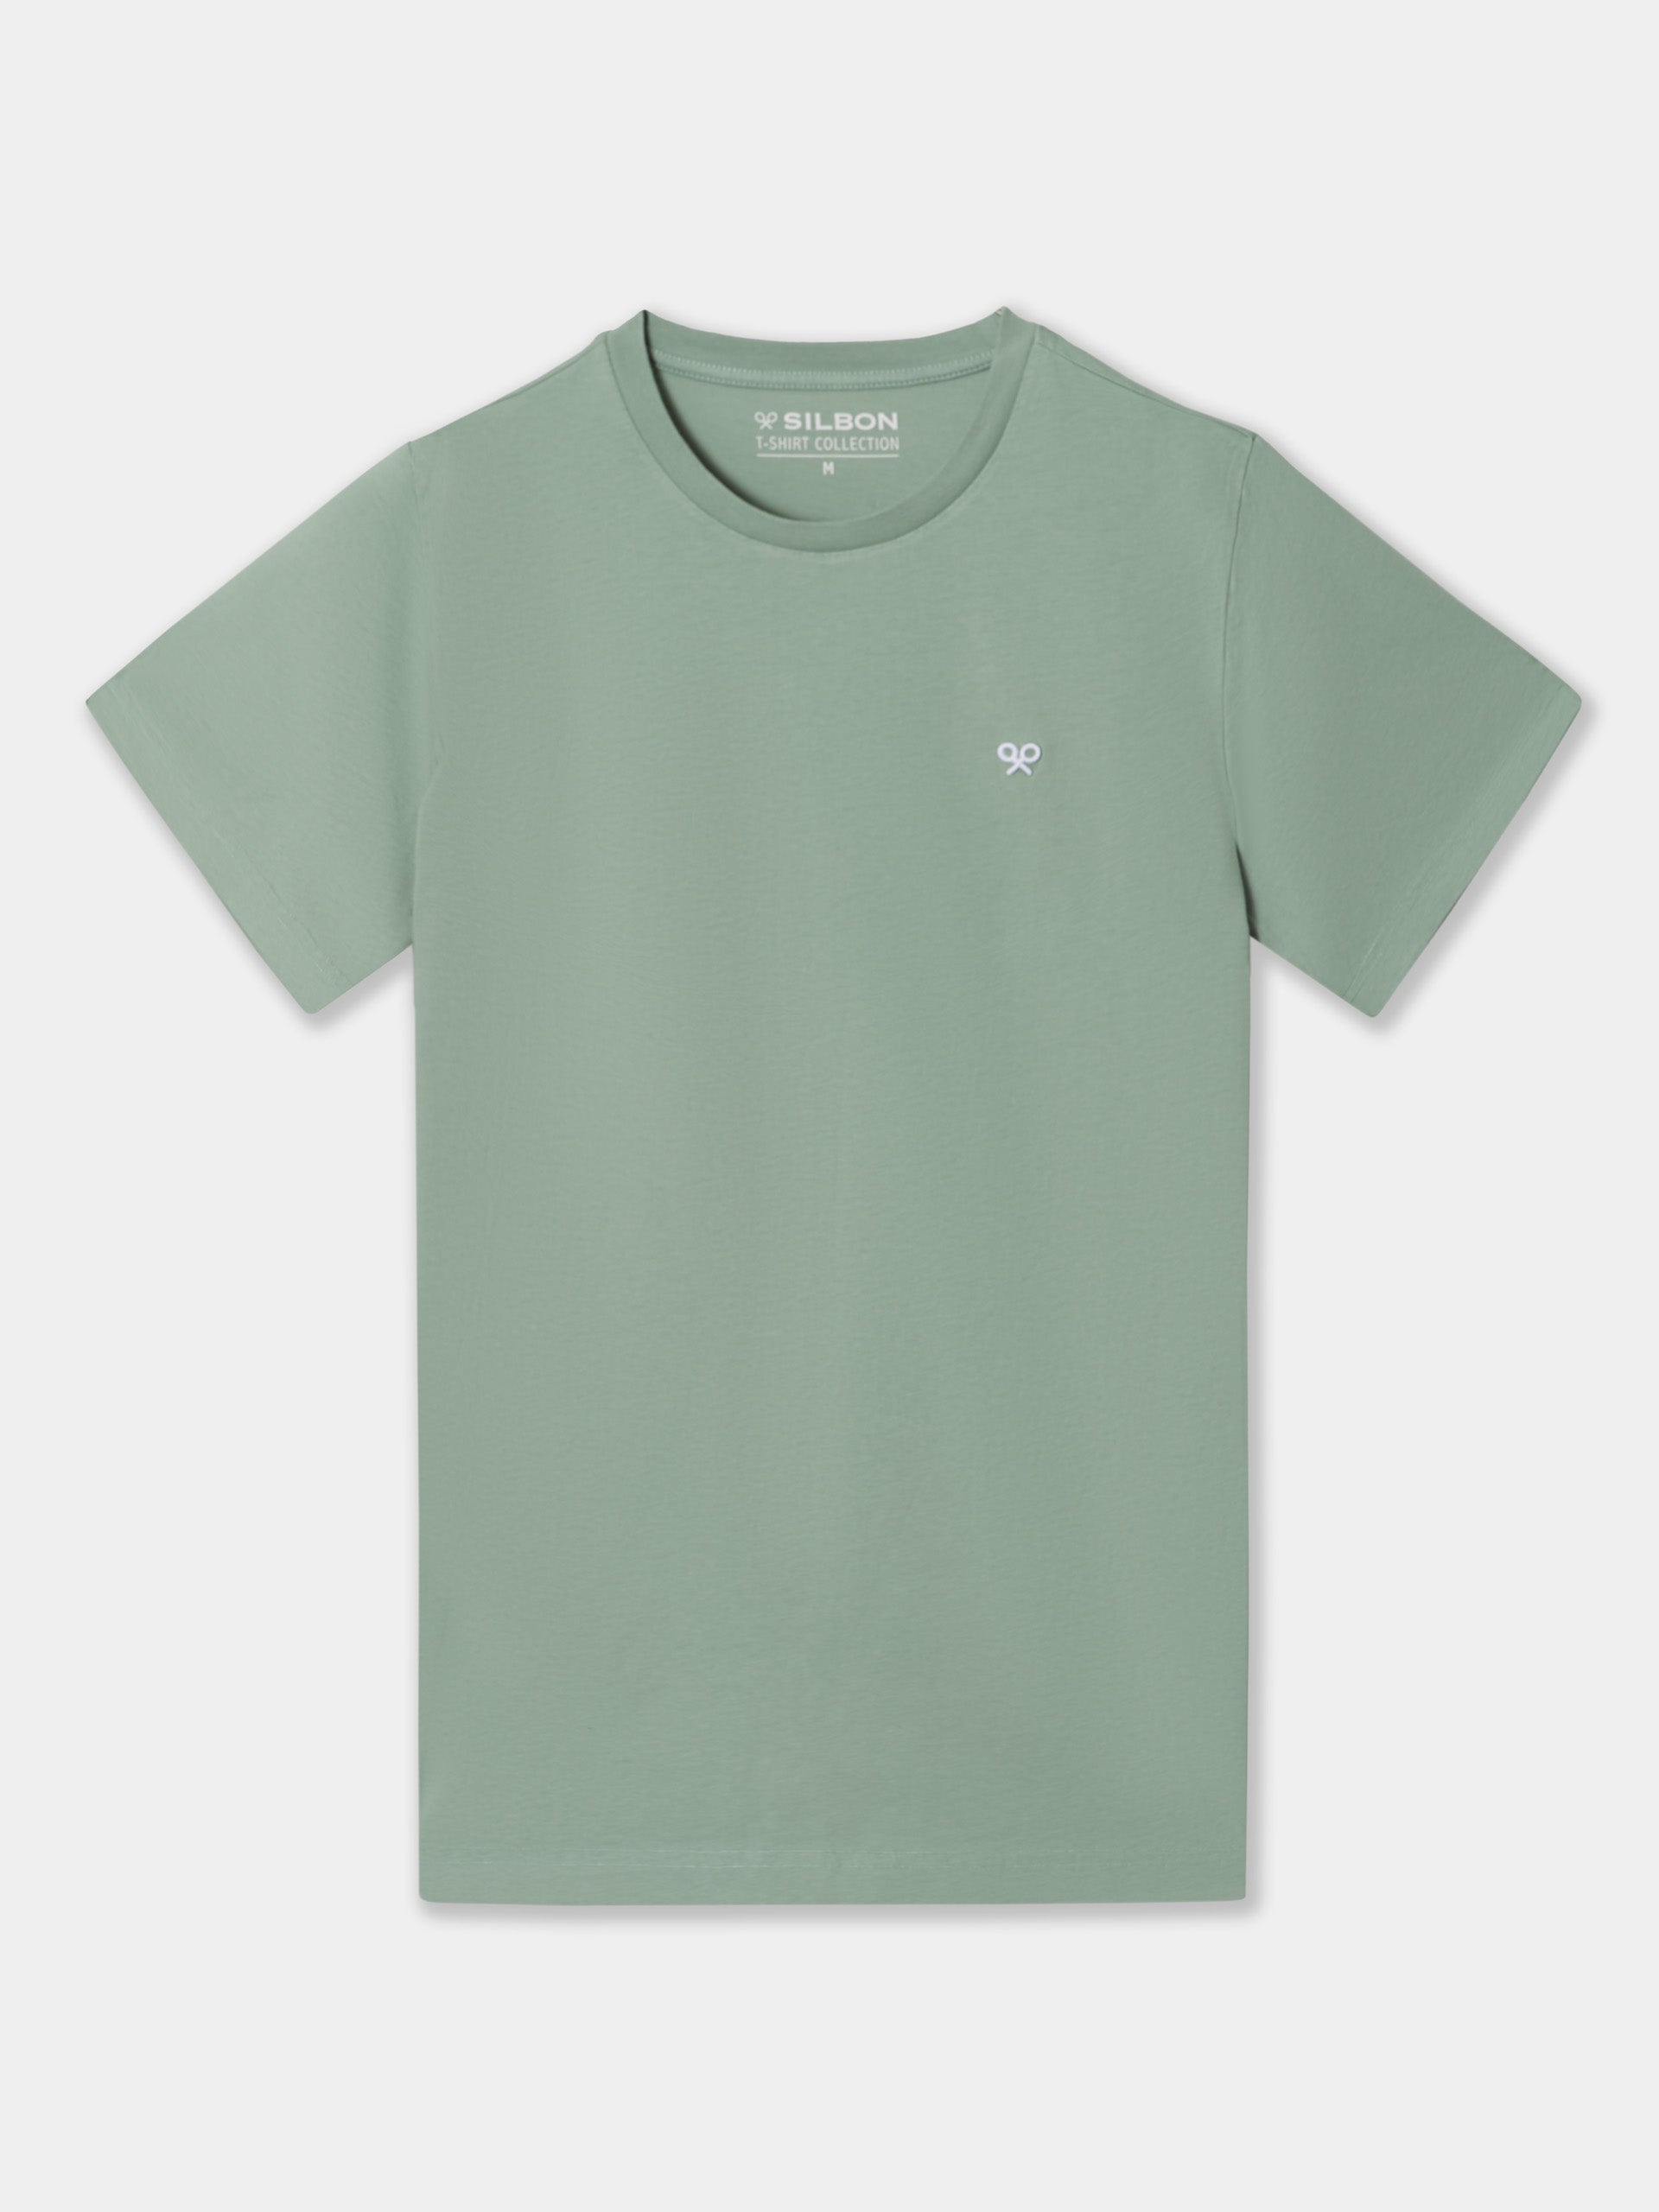 Camiseta raqueta geometrica verde